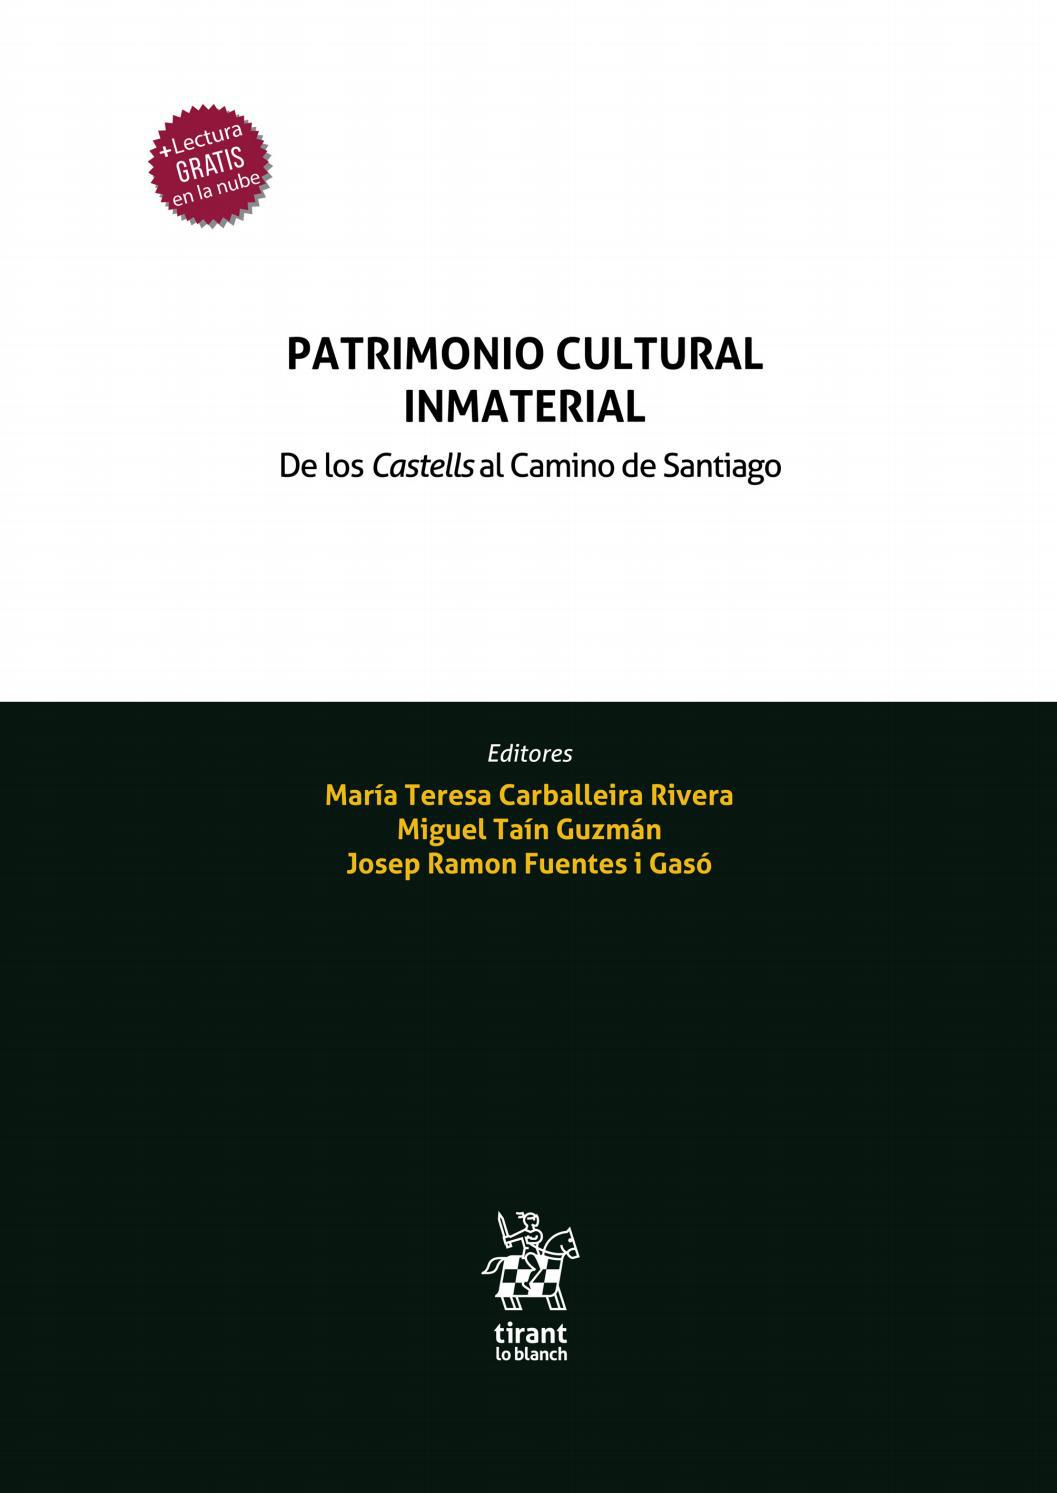 Imagen de portada del libro Patrimonio cultural inmaterial